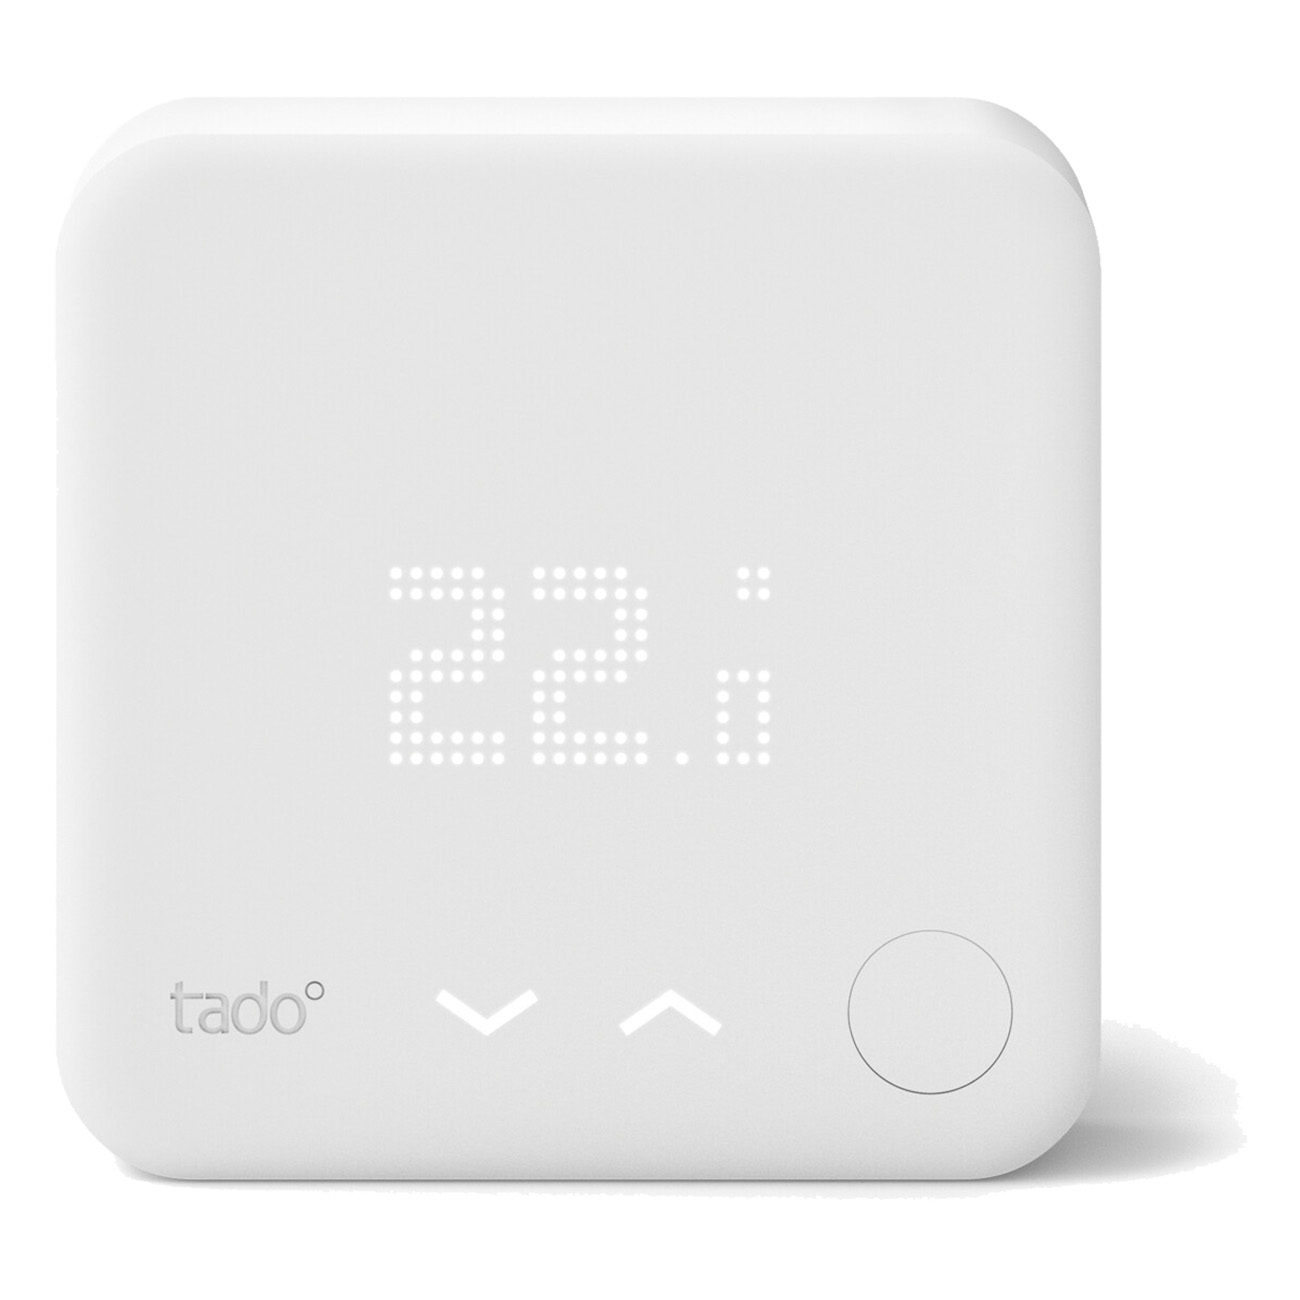 Tado Smart Thermostat | Funk-Temperatursensor | Verkabelt | Kein Bohren erforderlich | Zusatzprodukt f?r Smarte Heizk?rper-Thermostate von tado